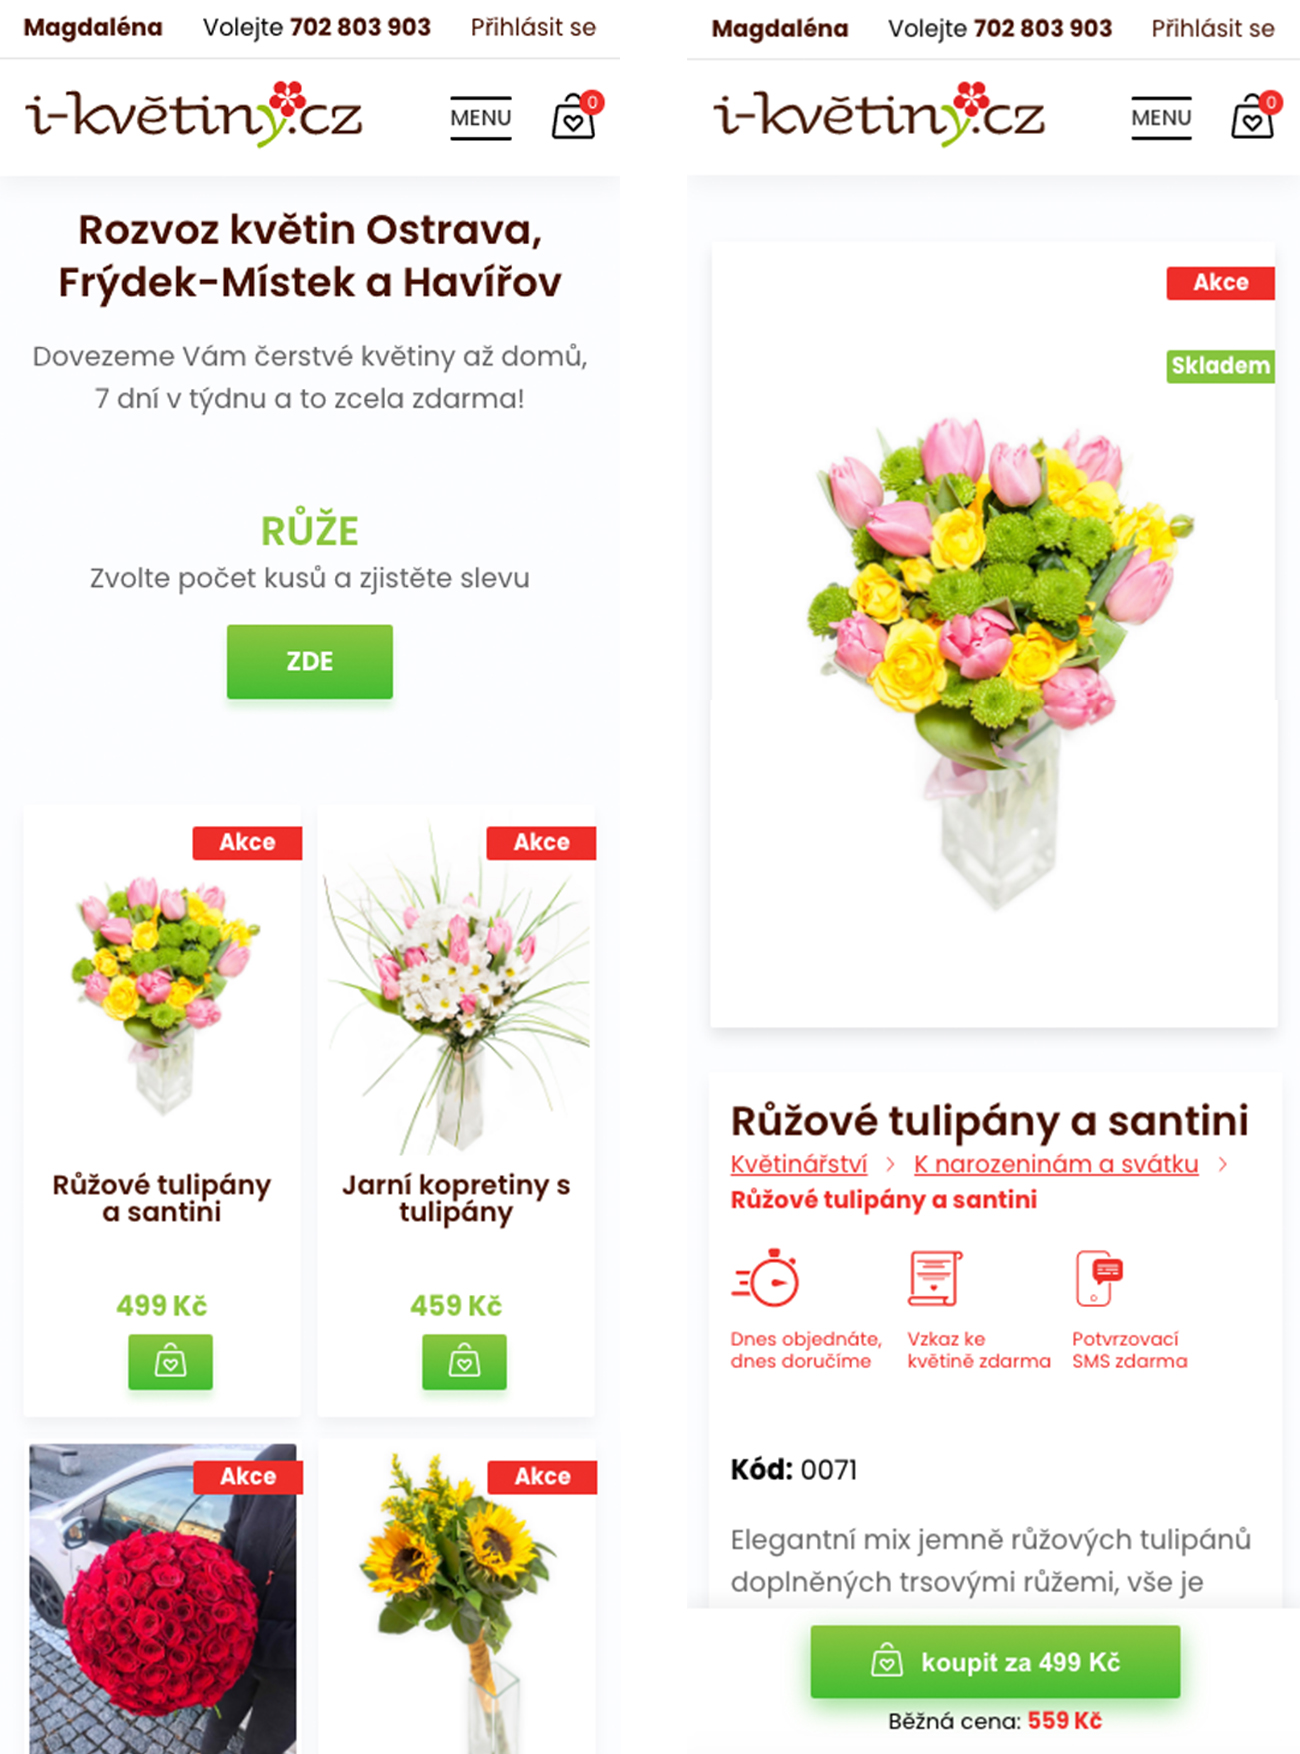 Nový mobilní web i-kvetiny.cz